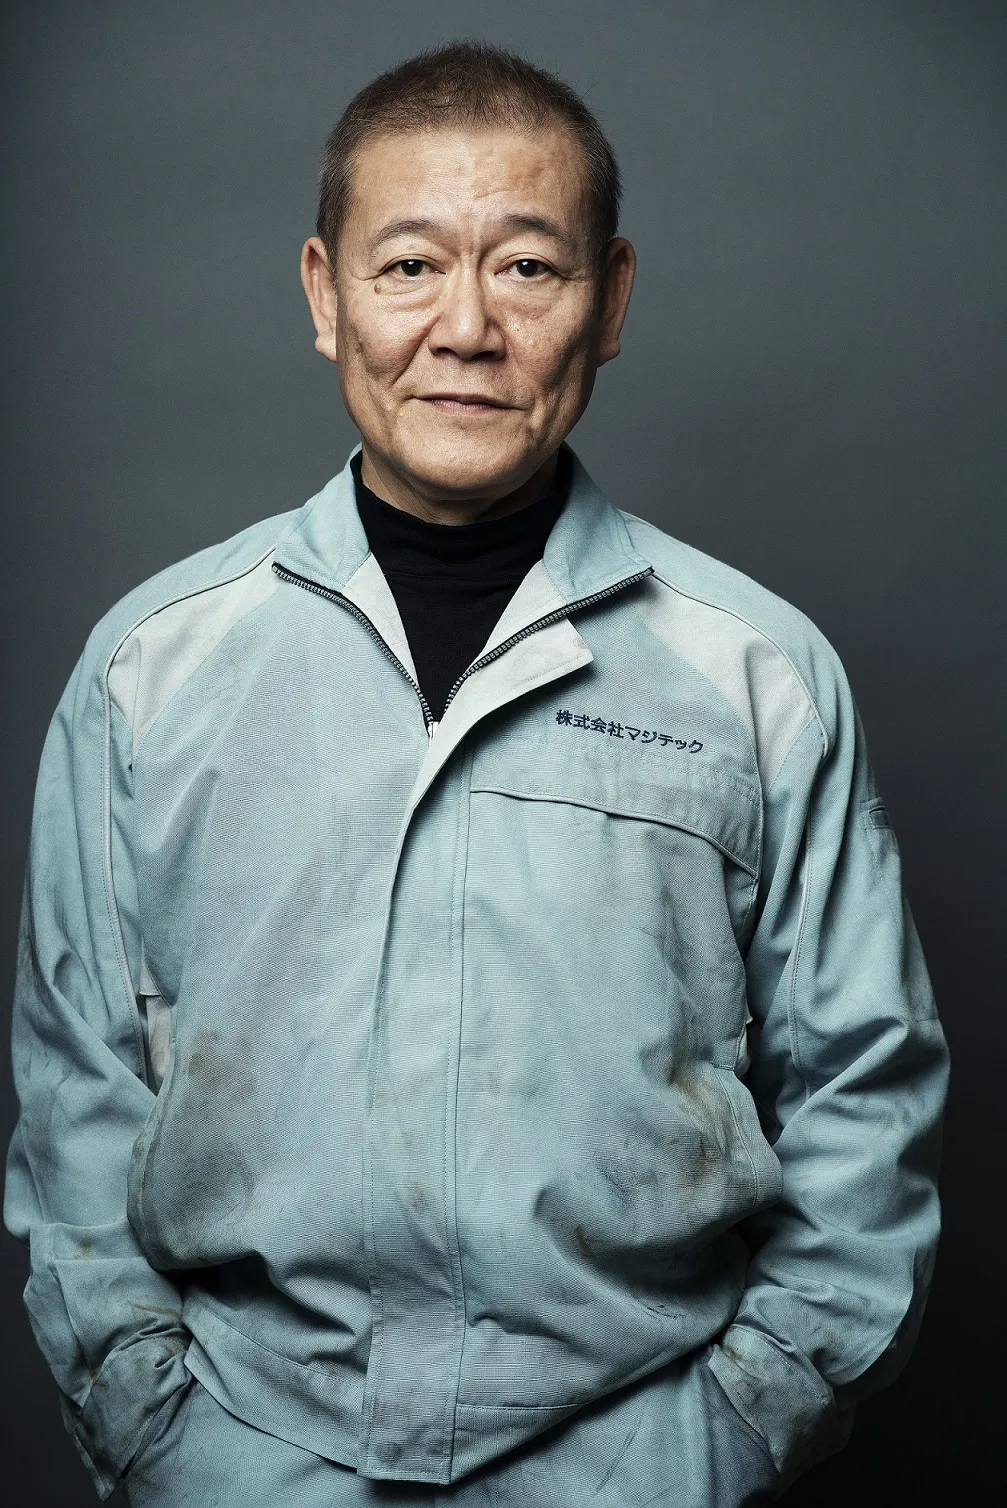 國村隼は、マジテックの工場主任・桶本修を演じる。桶本は博士の創造性に感銘を受け、技術者としてマジテックを支える